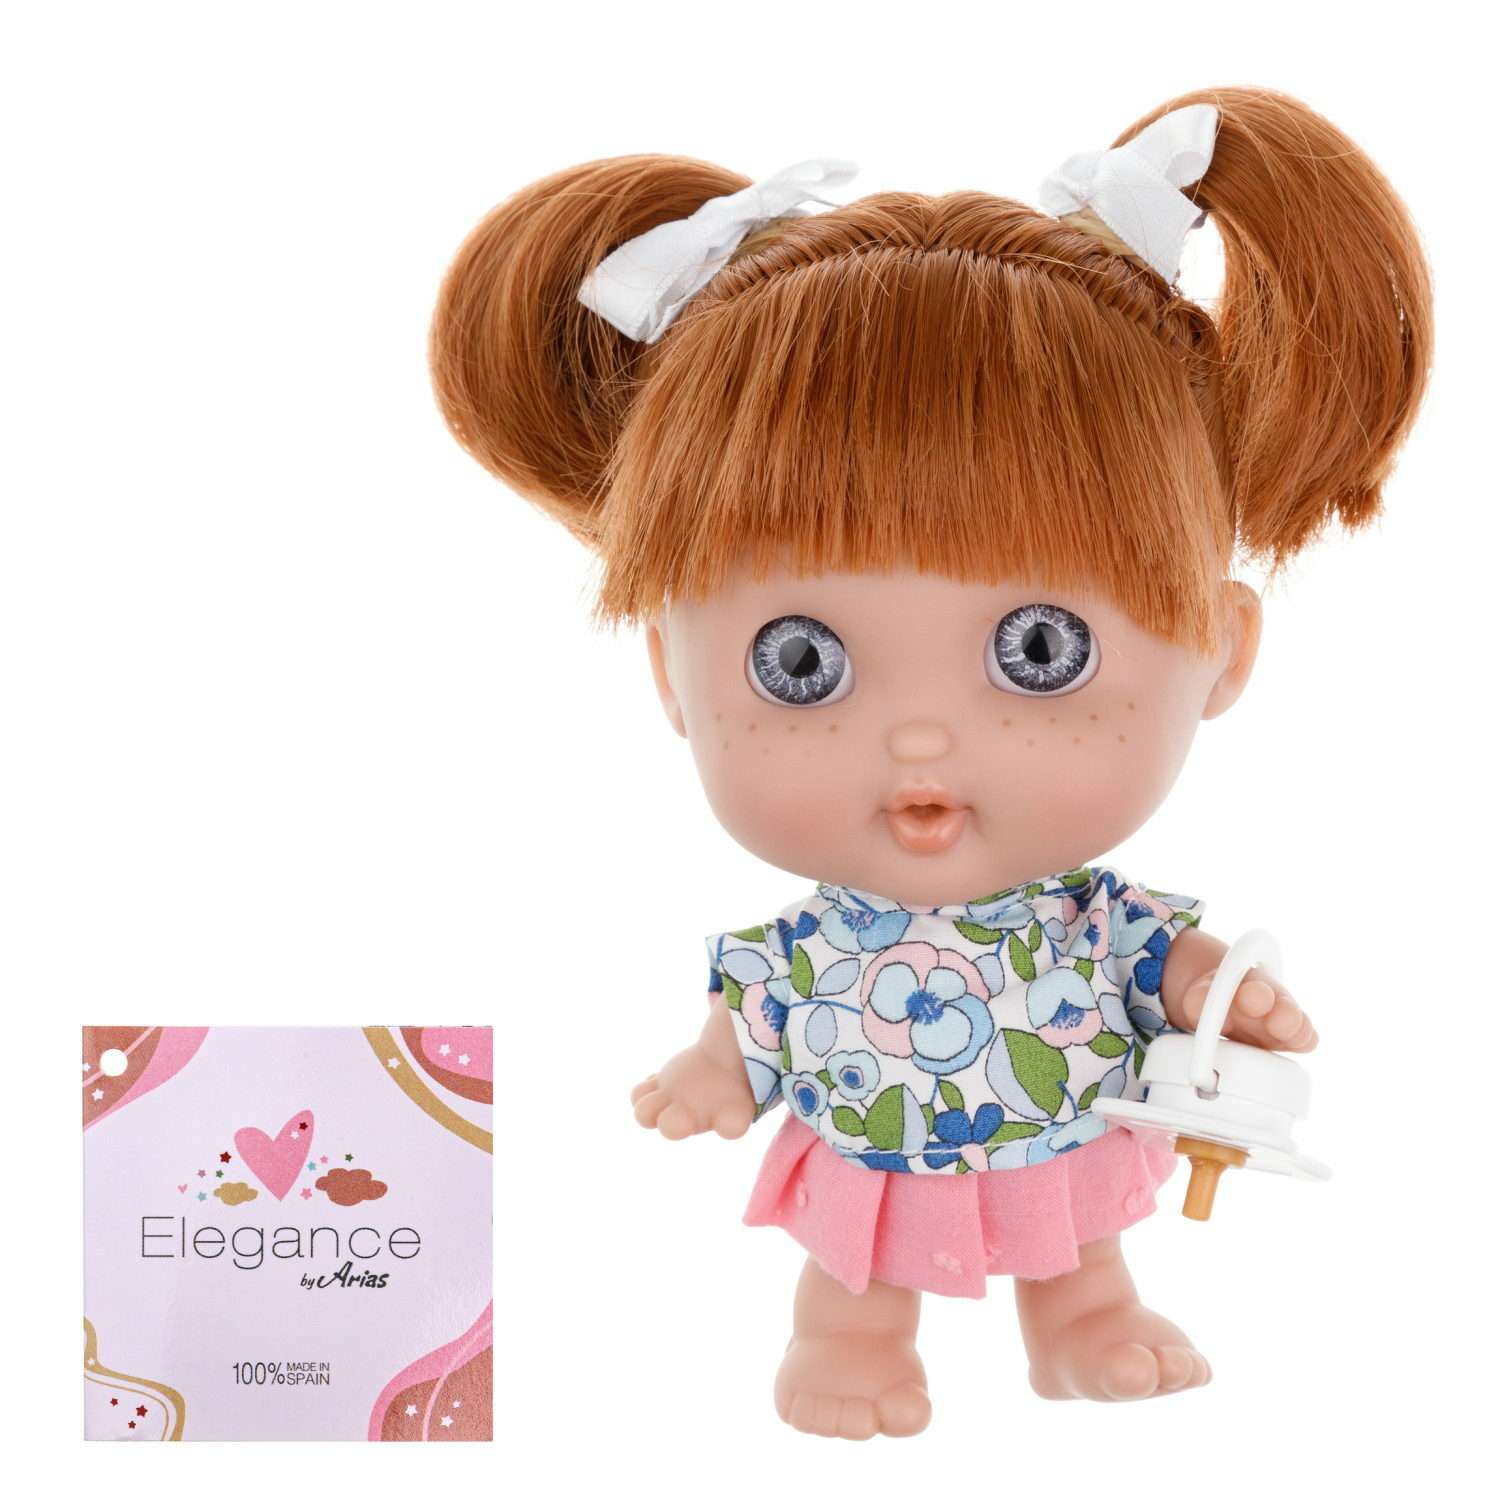 Кукла Arias elegance pequitas с рыжими волосами c cоской в розовой юбке и футболке в цветочек 17 см Т19780-11 - фото 1